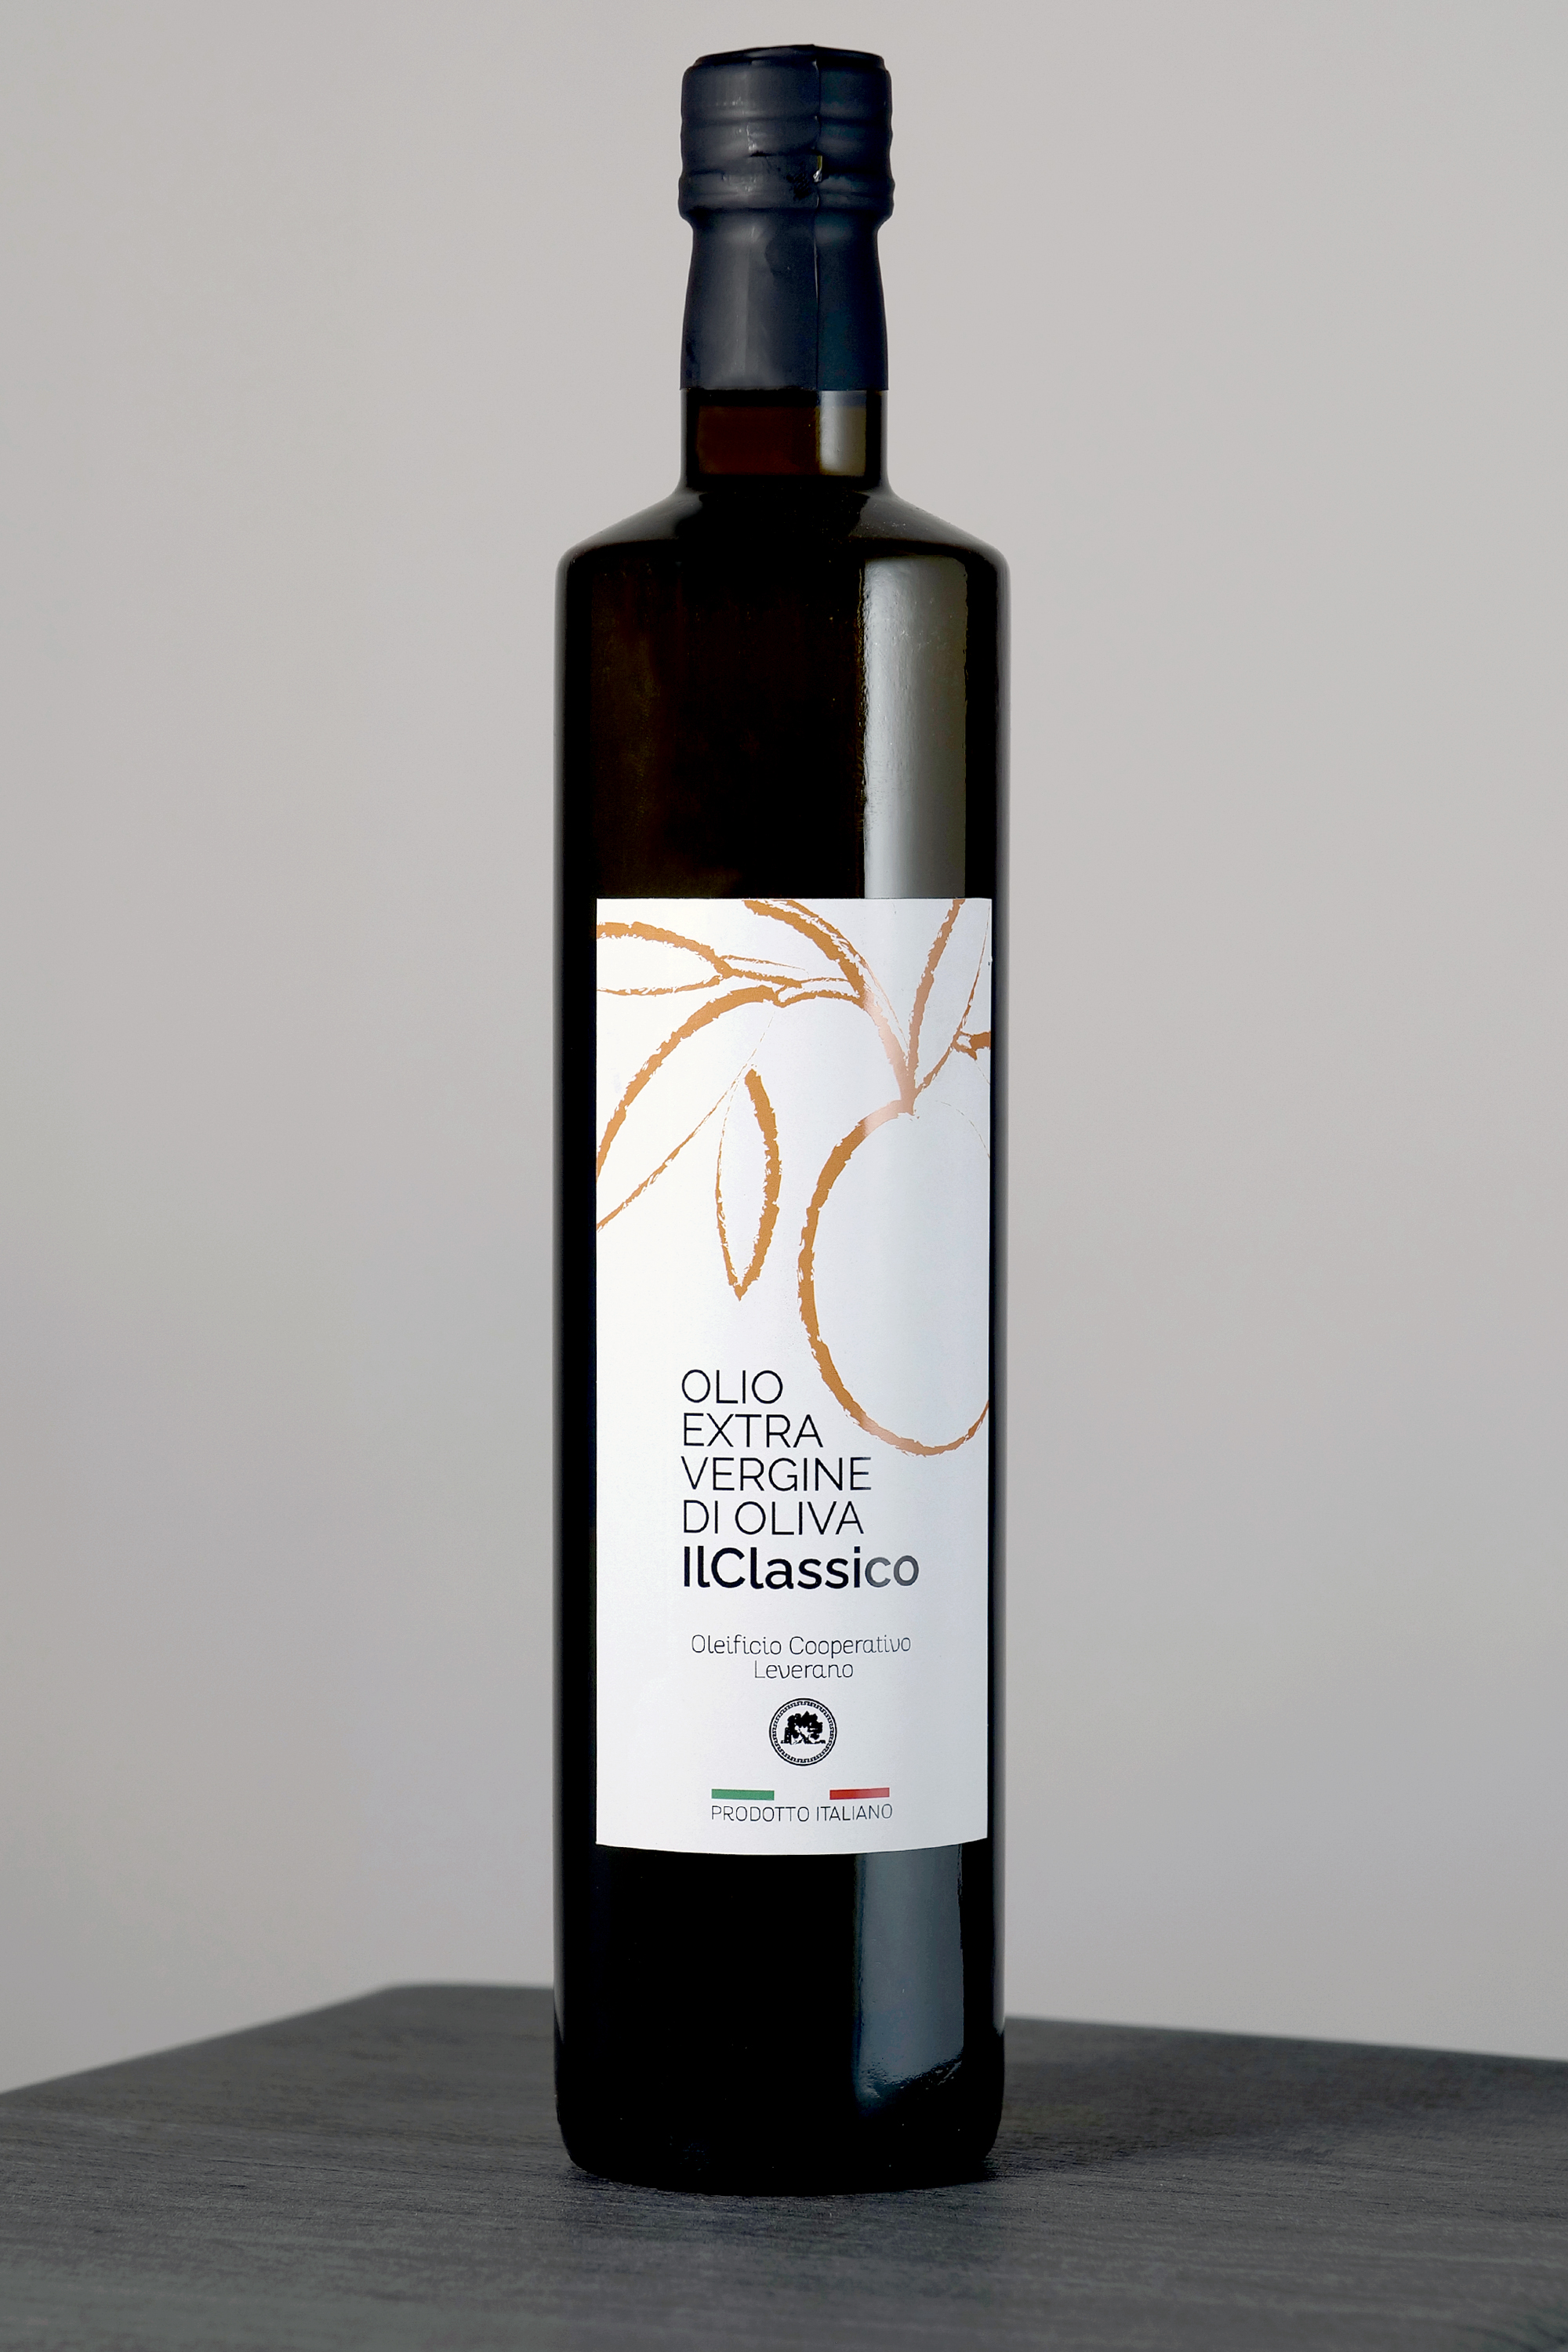 Extravergine d'oliva "IlClassico" - lt. 0,75